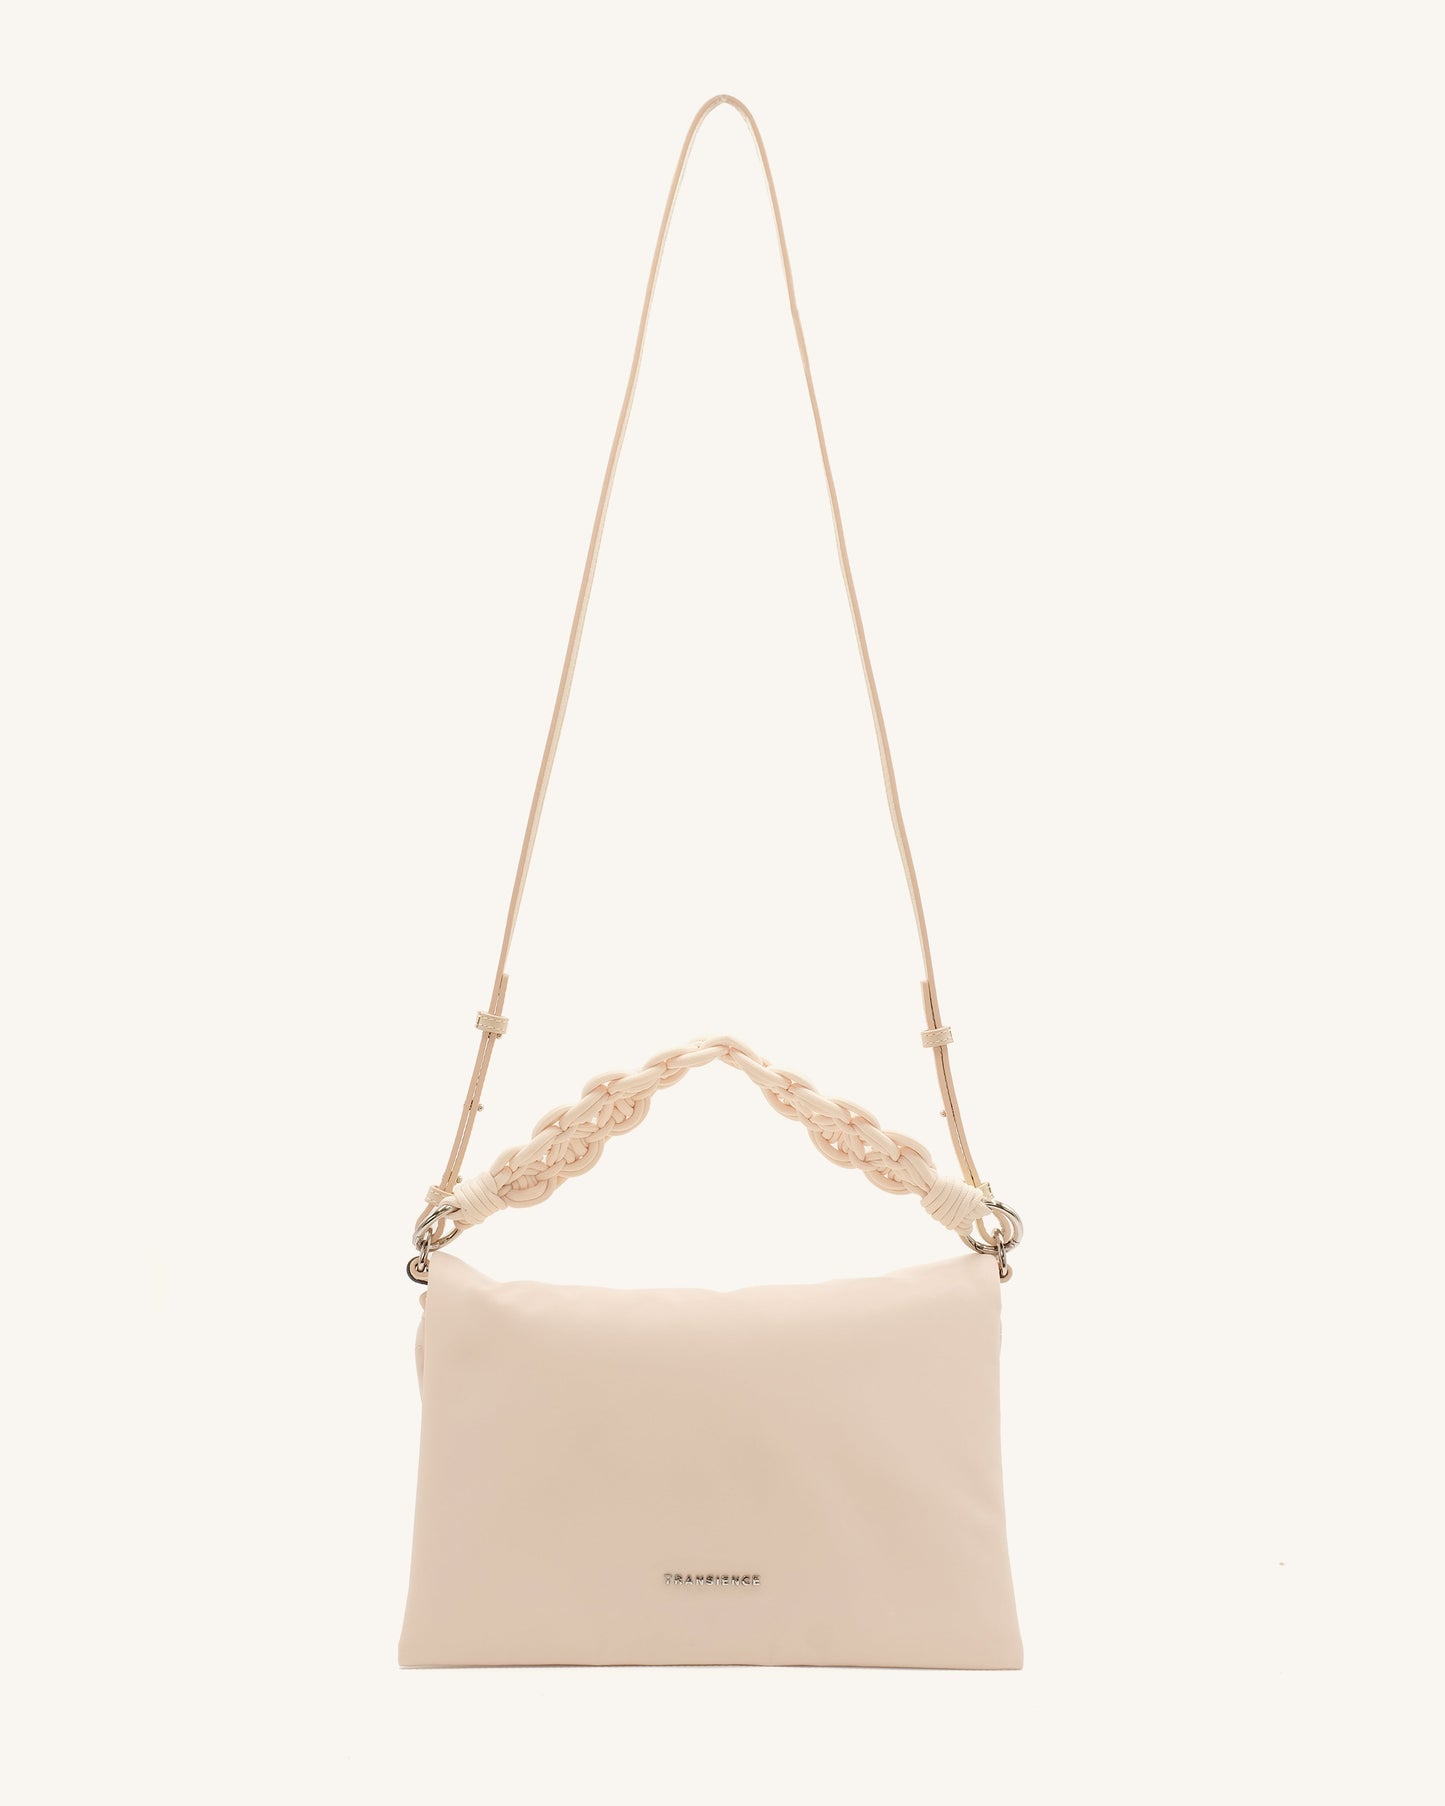 SAMPLE SALE: Pillow Bag - Coconut